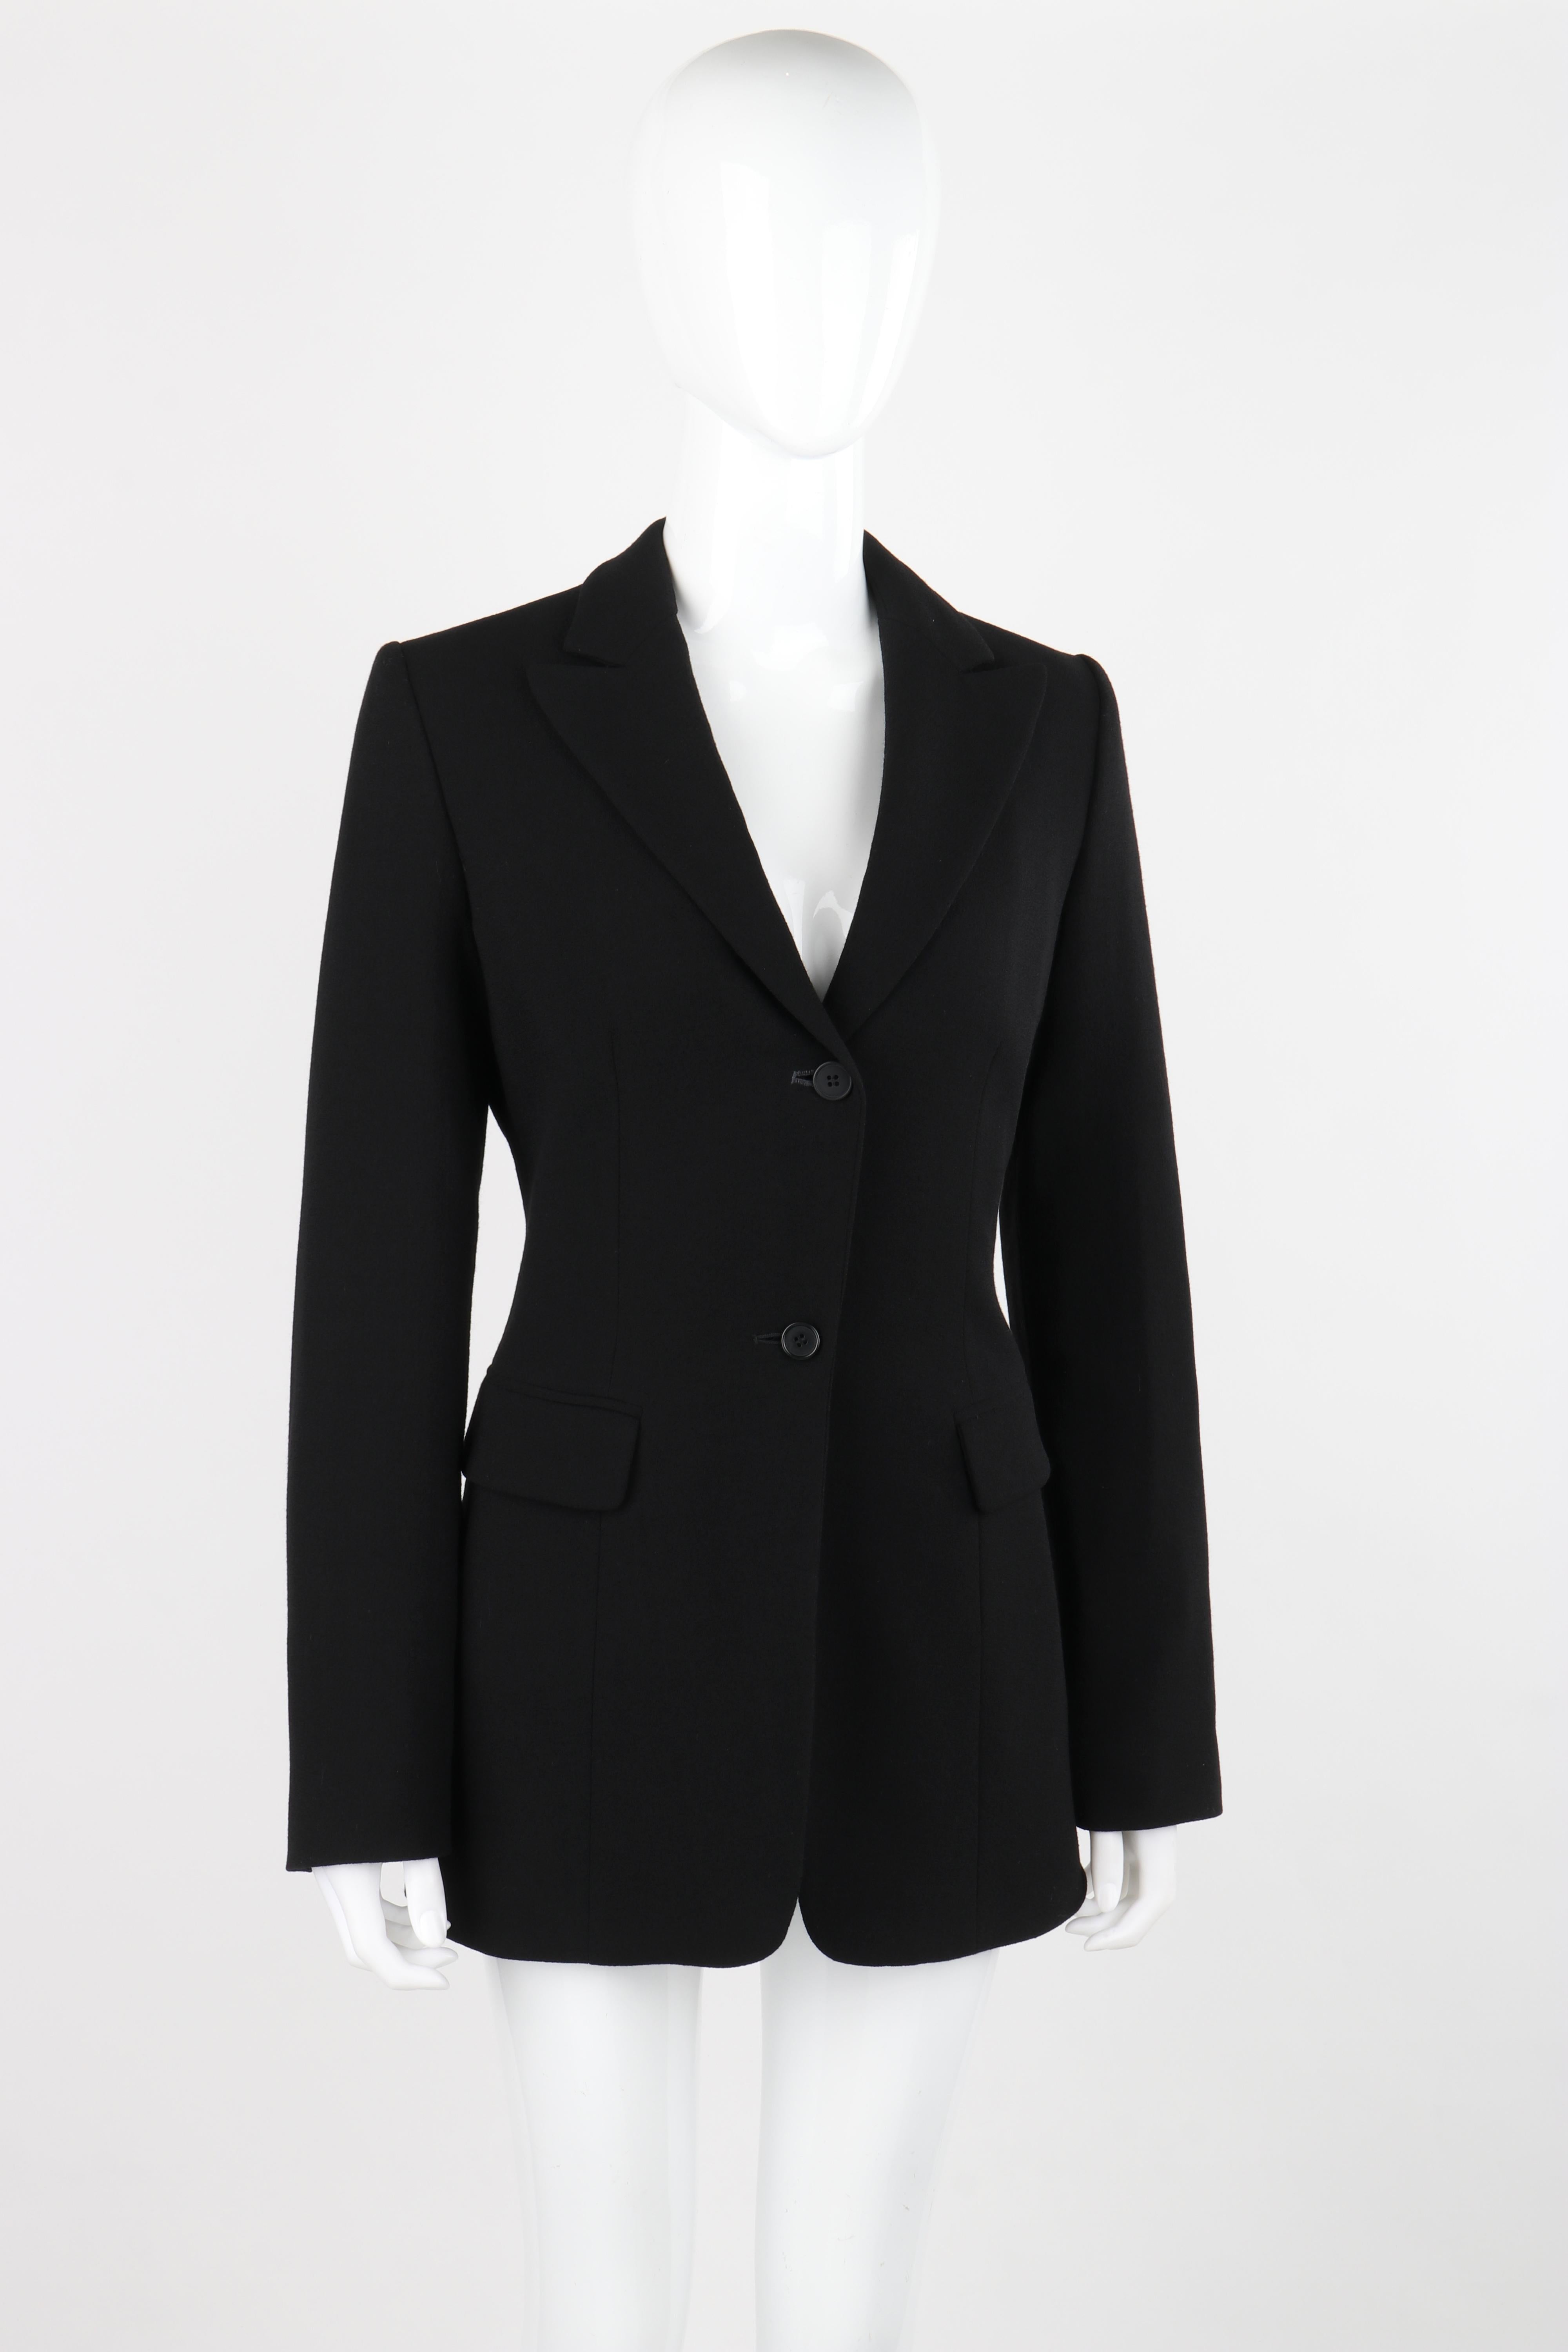 OWEN GASTER c.1990's Vtg Black Wool Structured Zip Open Back Blazer Jacket RARE For Sale 2